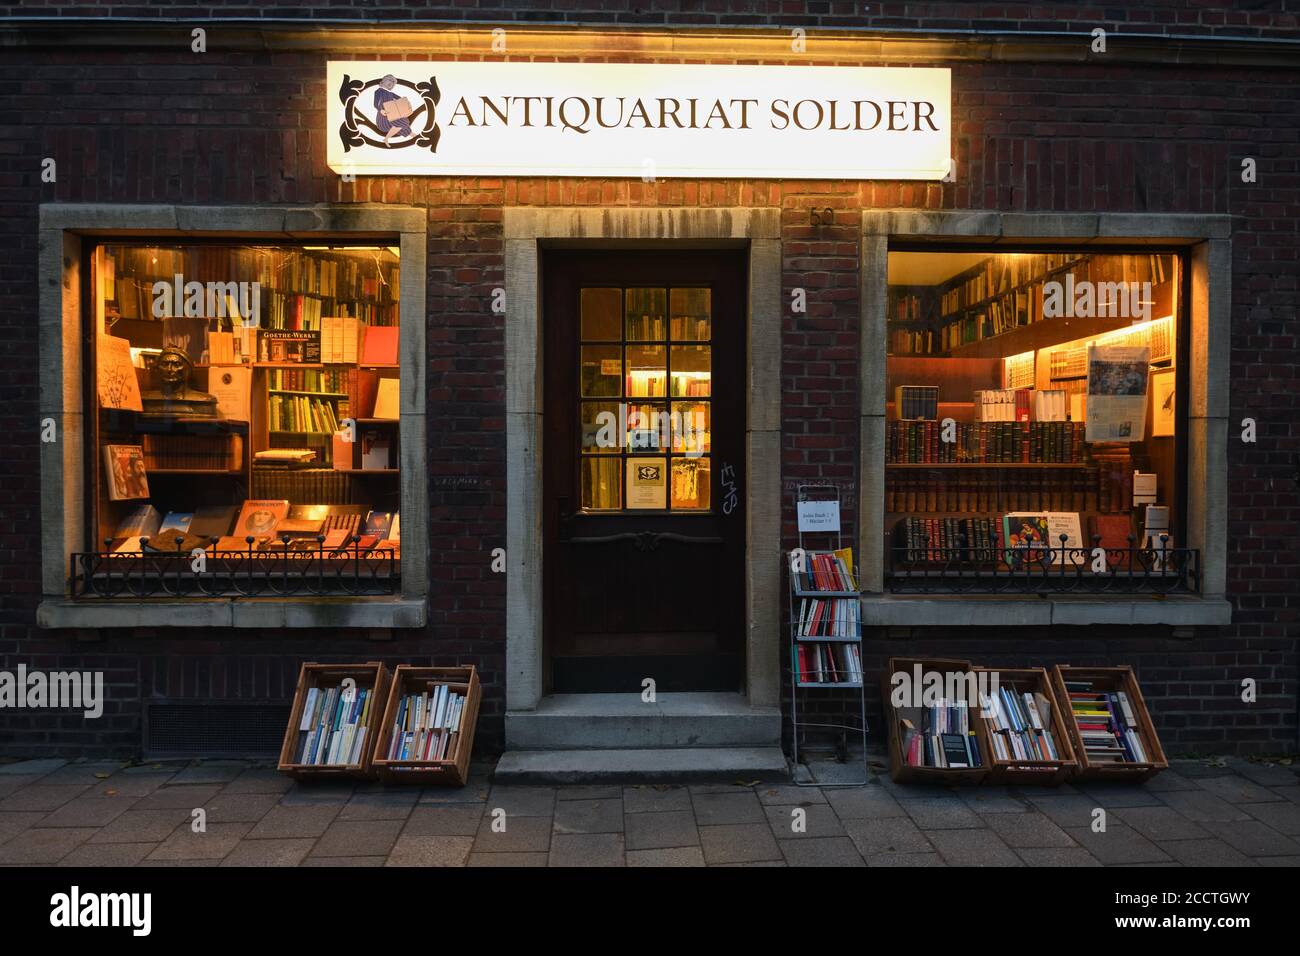 Muenster, libreria di seconda mano, libreria antiquaria Solder, nota location di film Wilsberg Crime nella città di Münster, Germania, Euro Foto Stock